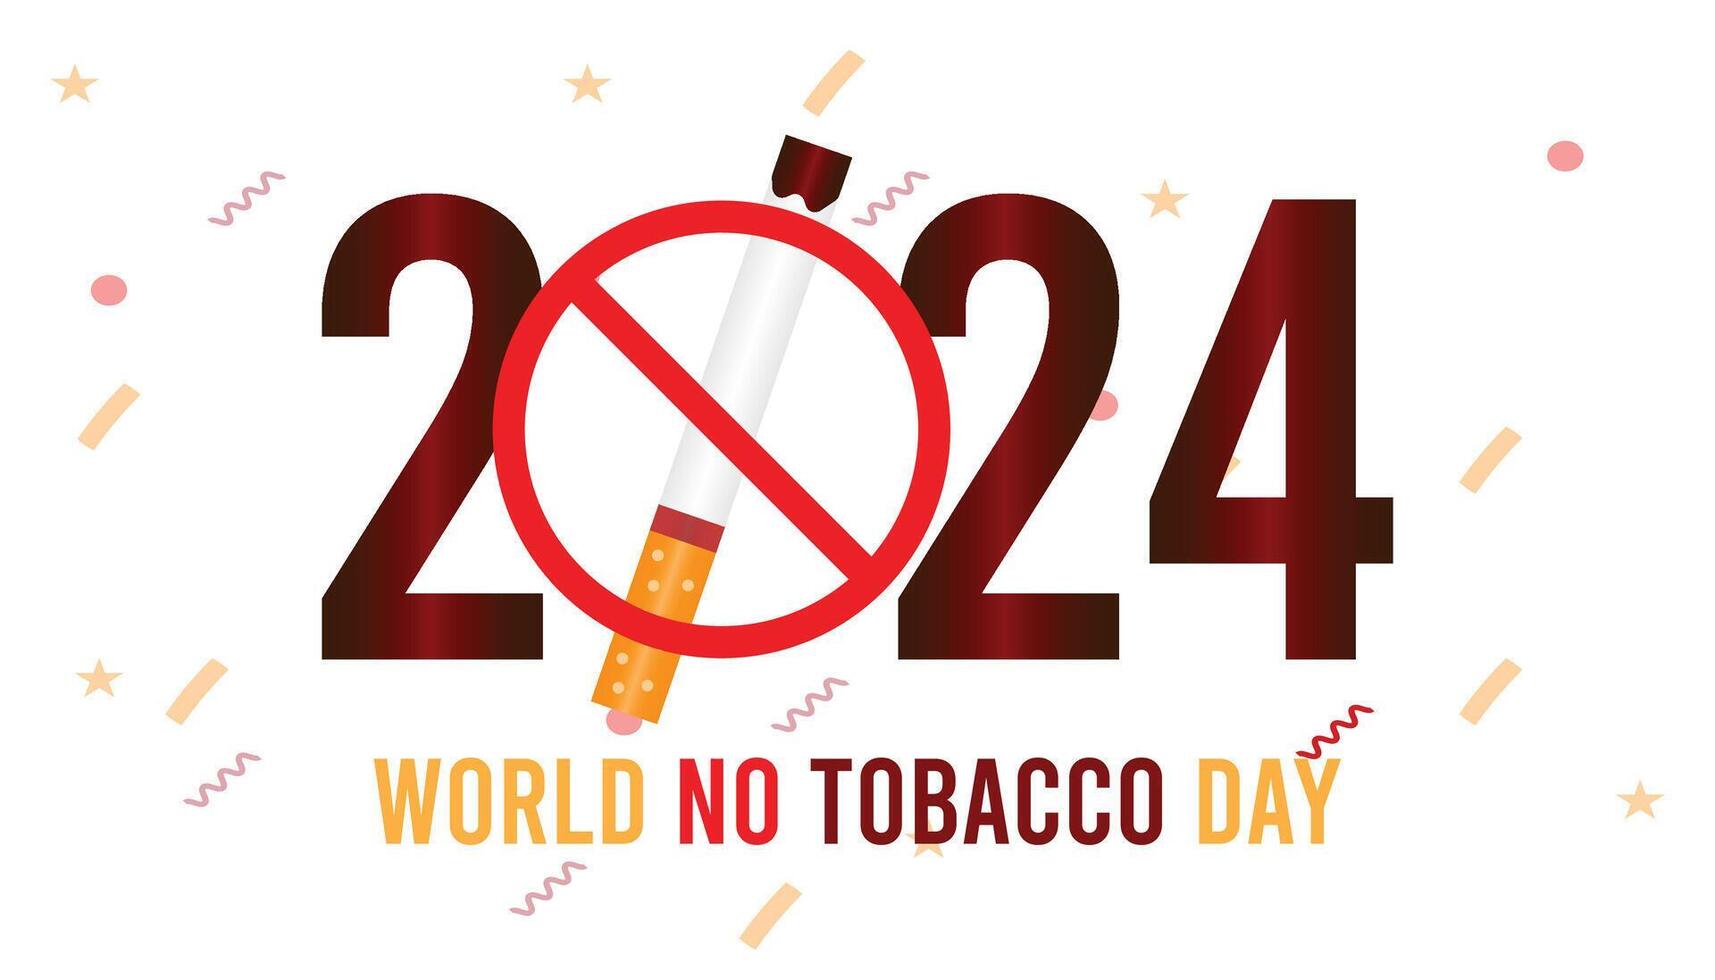 Welt Nein Tabak Tag beobachtete jeder Jahr im dürfen. Vorlage zum Hintergrund, Banner, Karte, Poster mit Text Inschrift. vektor